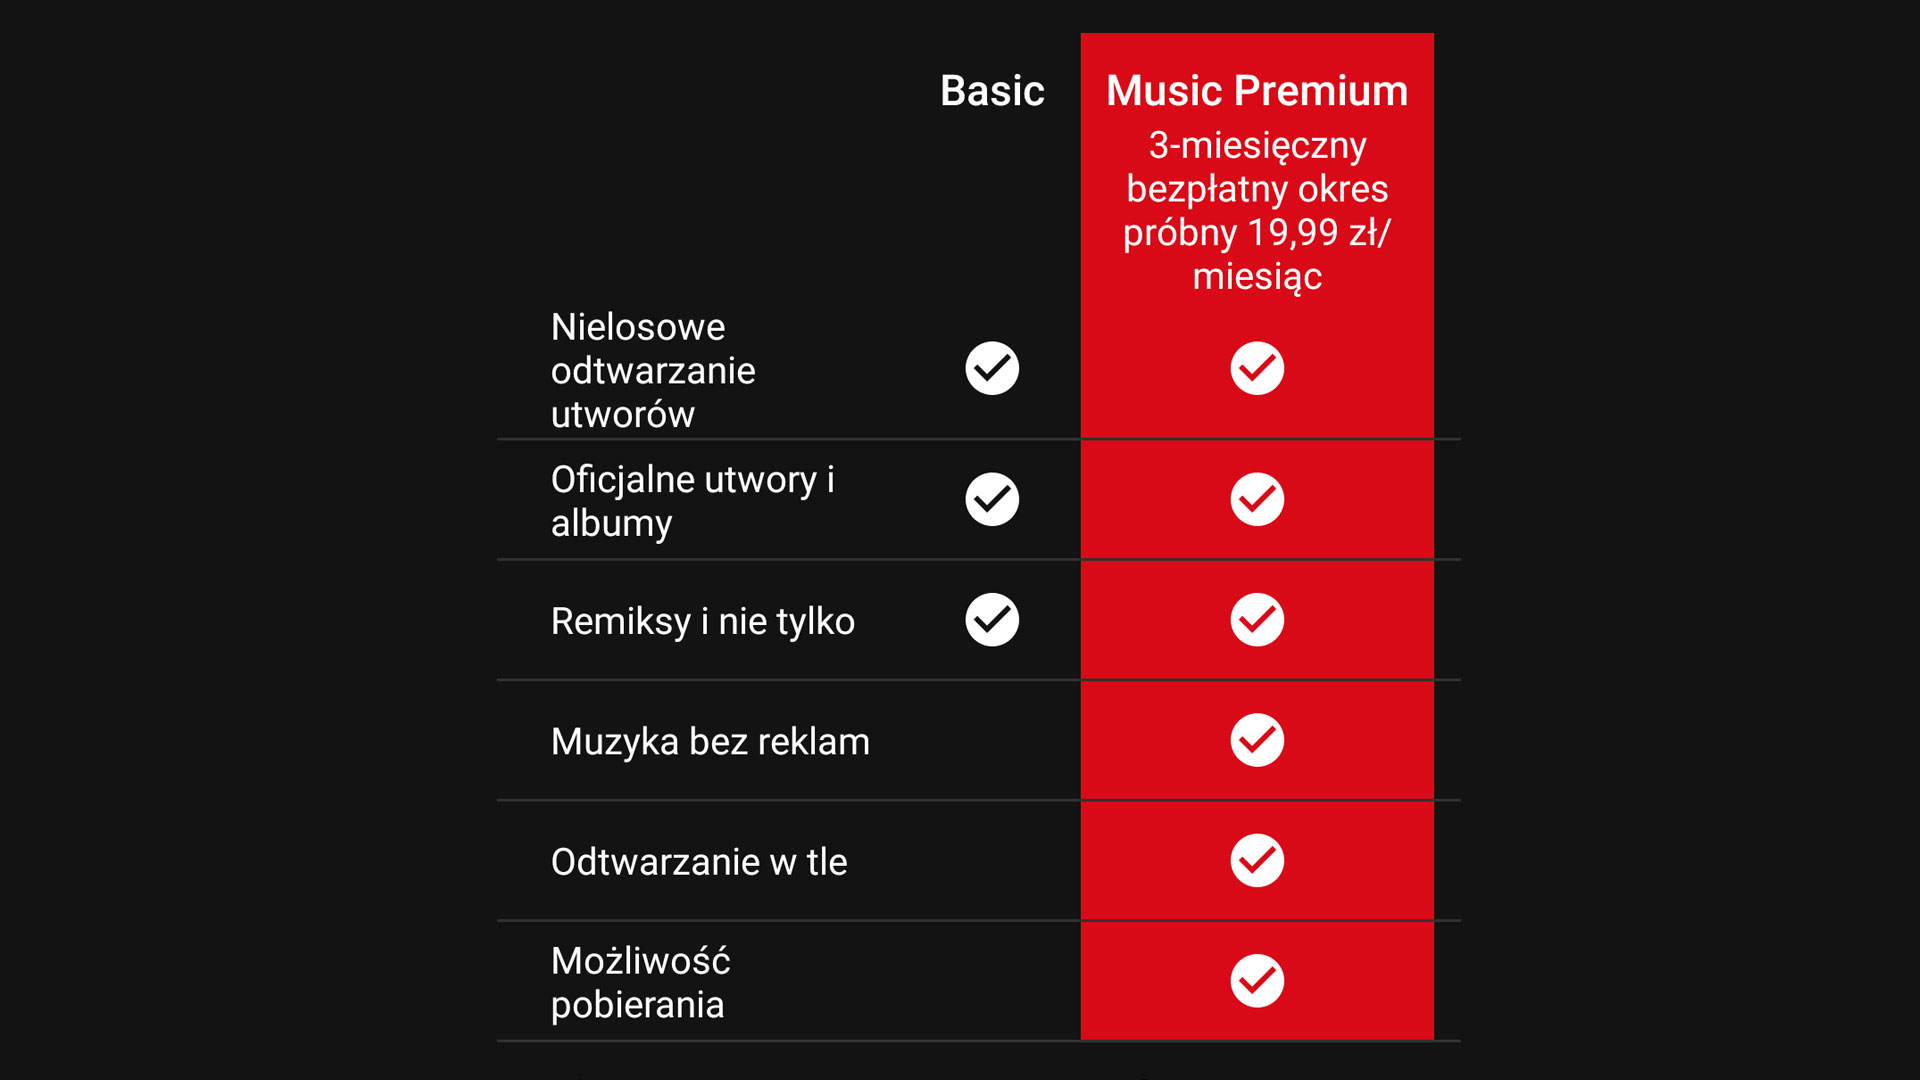 Porównanie wersji Basic i Music Premium